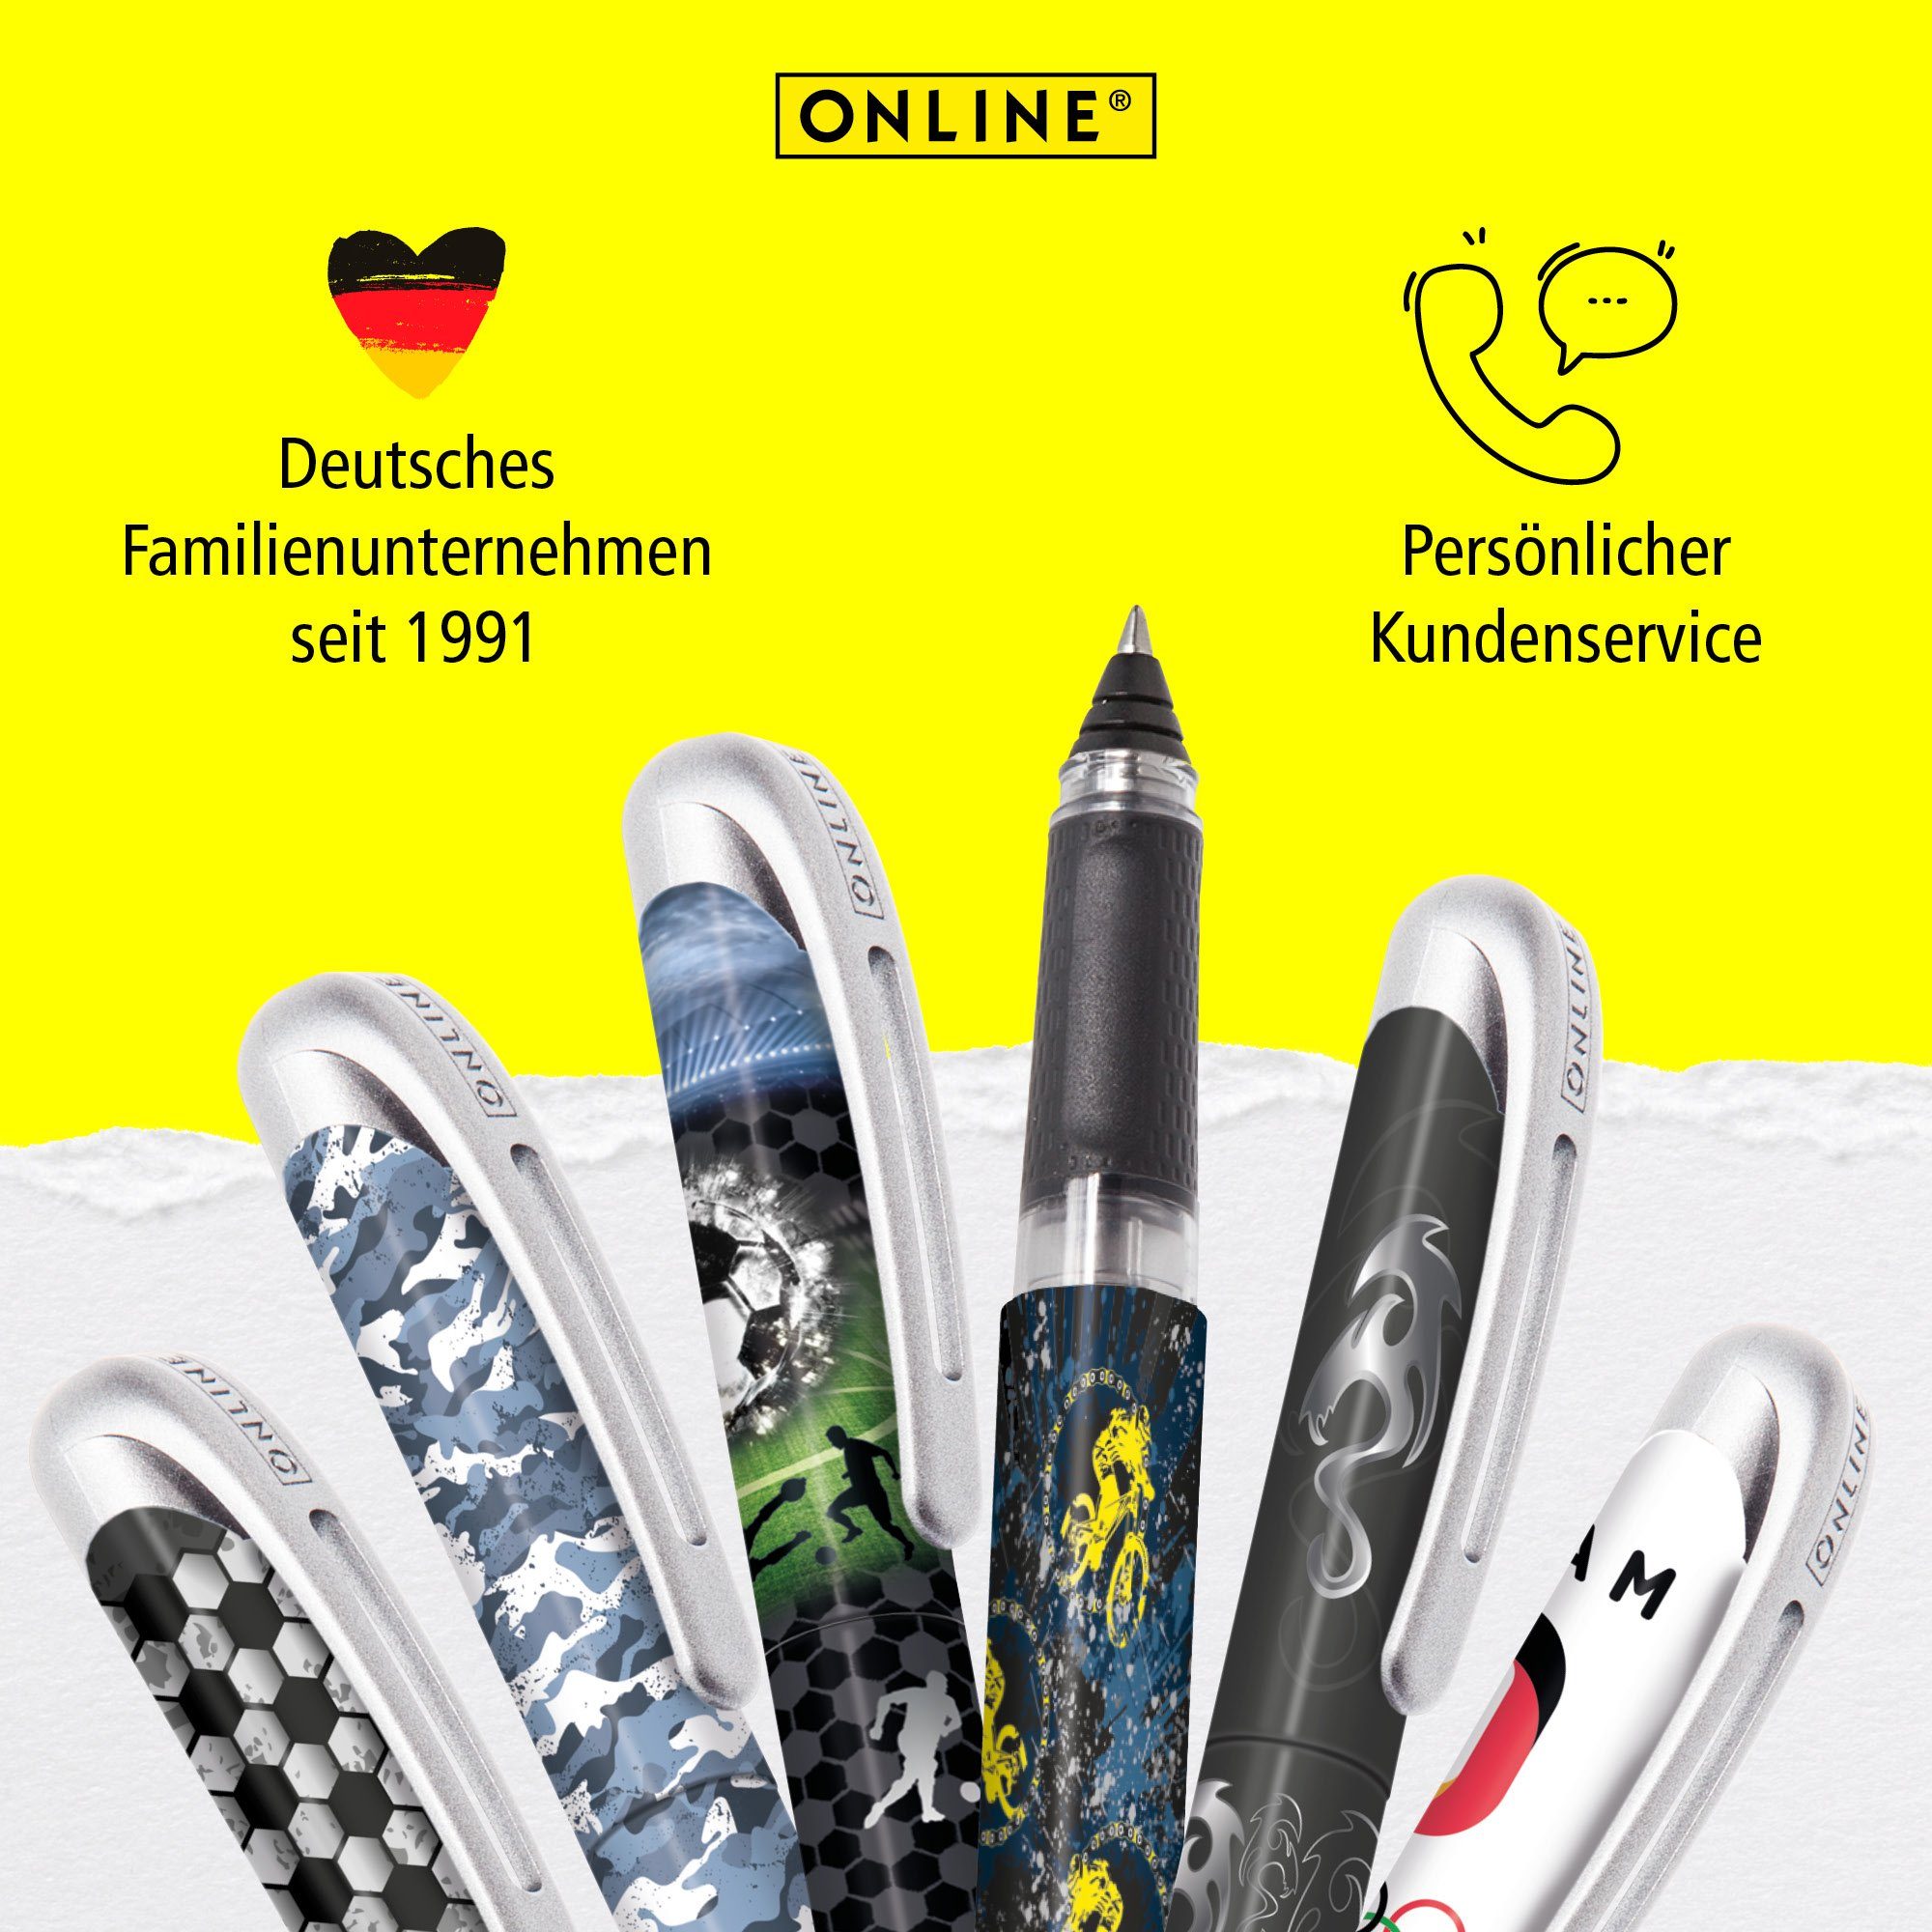 Online Pen für Deutschland Tintenpatronen-Rollerball, ideal die in Tintenroller College Schule, hergestellt ergonomisch, Camouflage